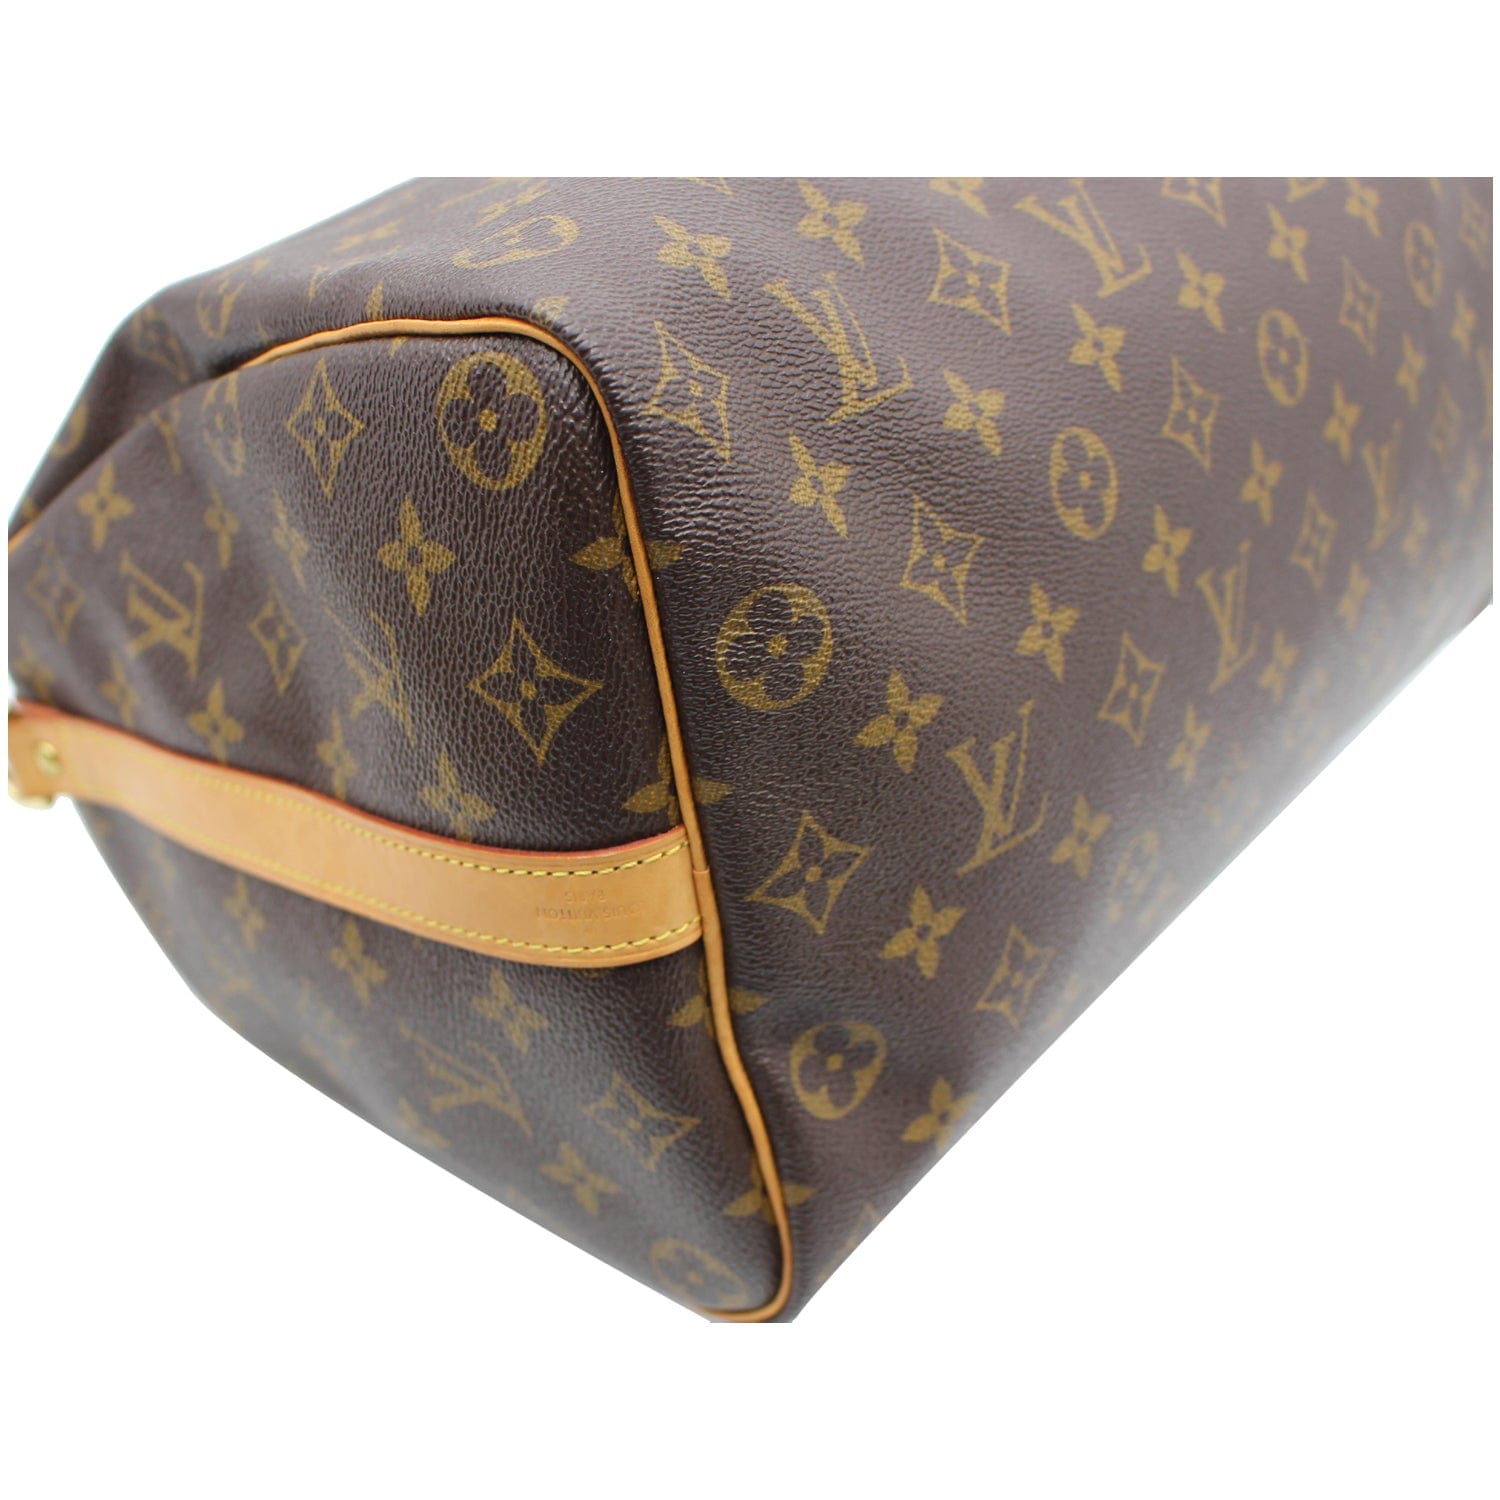 LOUIS VUITTON Speedy 35 bag in brown monogram canvas,…